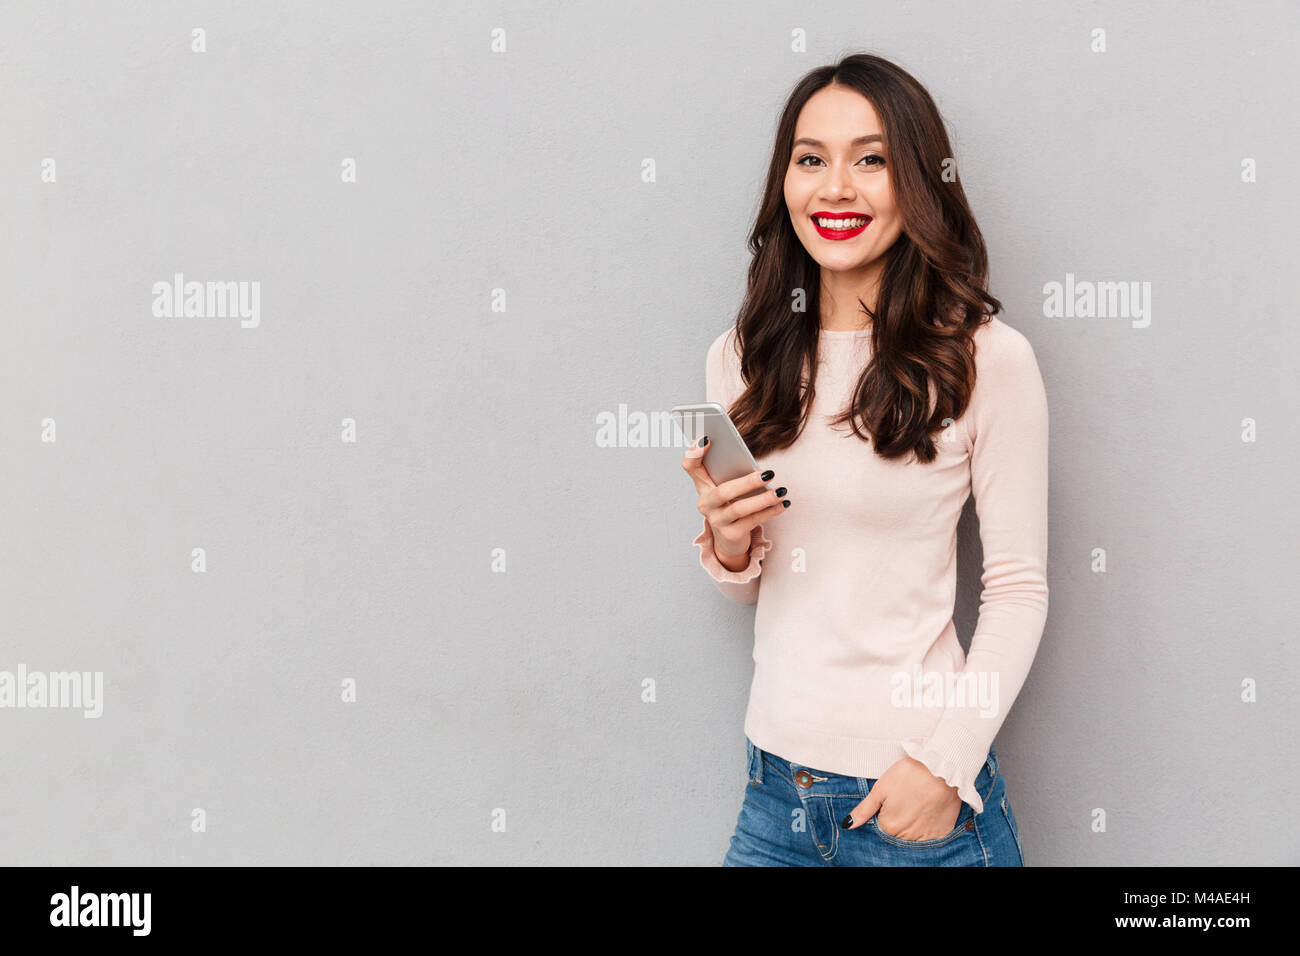 Photo horizontale de smiling woman with red lips saisissez du texte ou message défilement dans réseau social, à l'aide de blackberry sur fond gris Banque D'Images